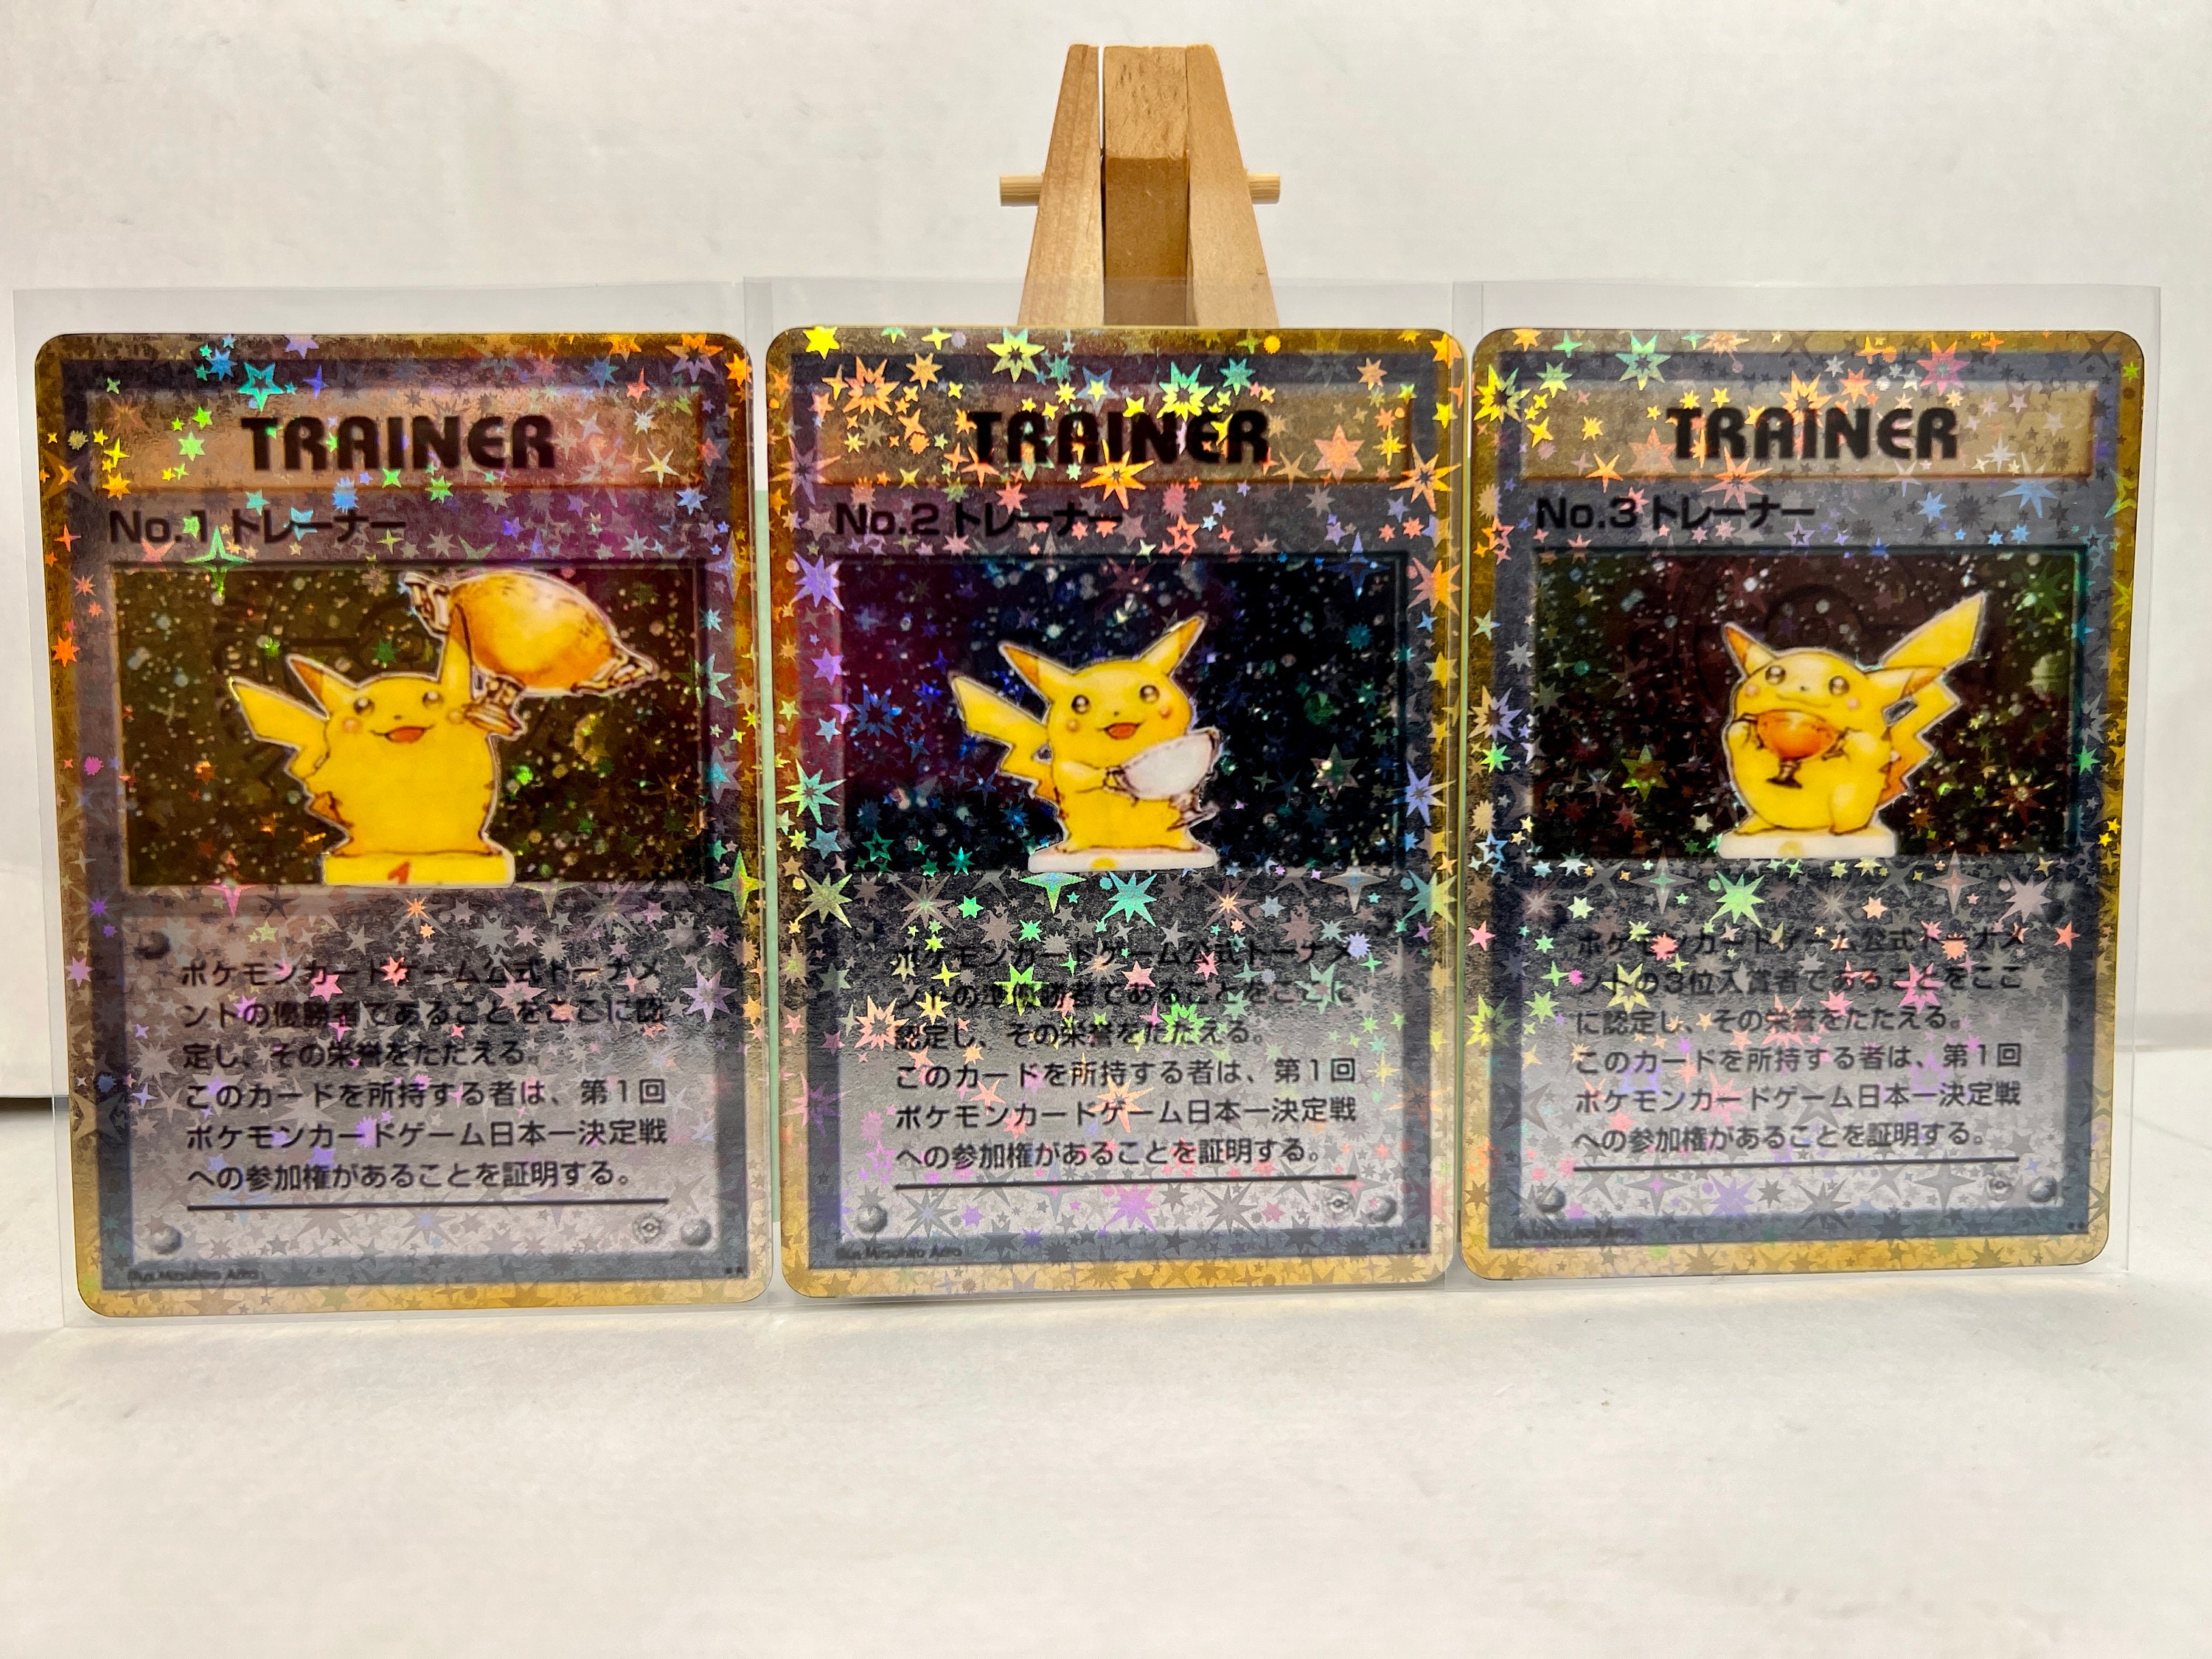 Unofficial Artist Made Pikachu & Zekrom-gx 184/181 Rainbow 